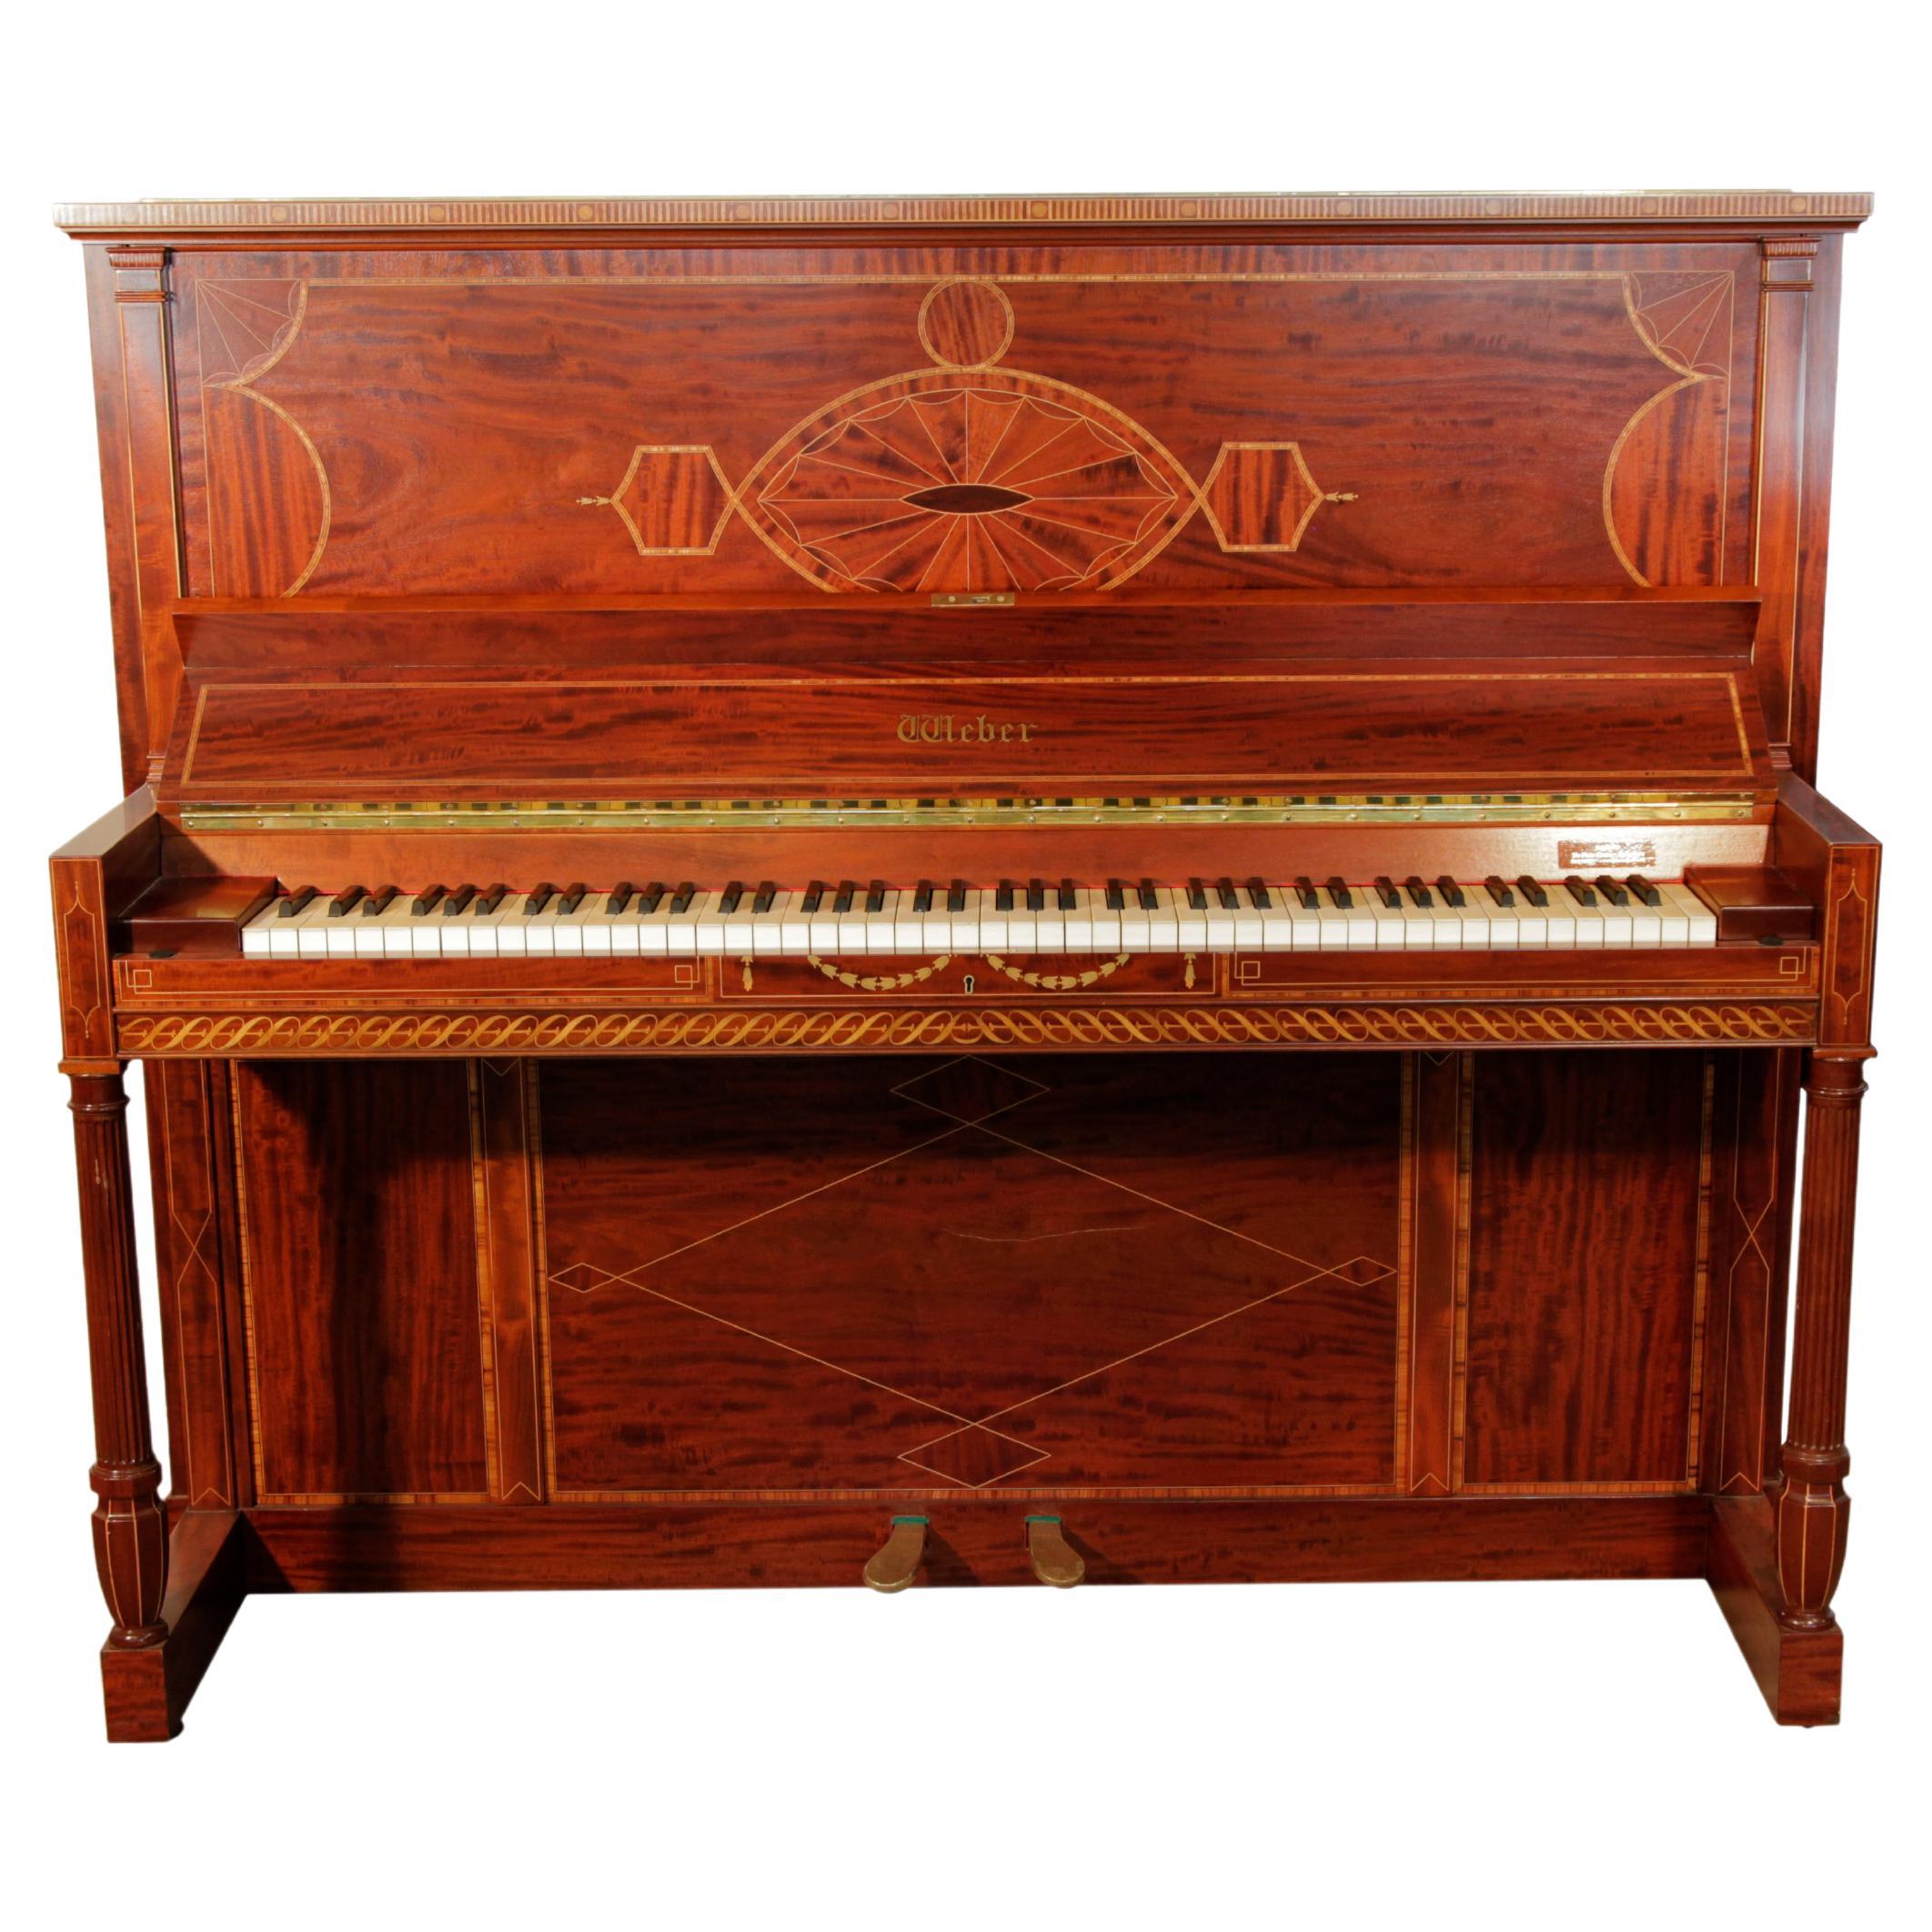 Weber, piano droit, pieds cannelés en acajou flammé, incrustation néoclassique stylisée